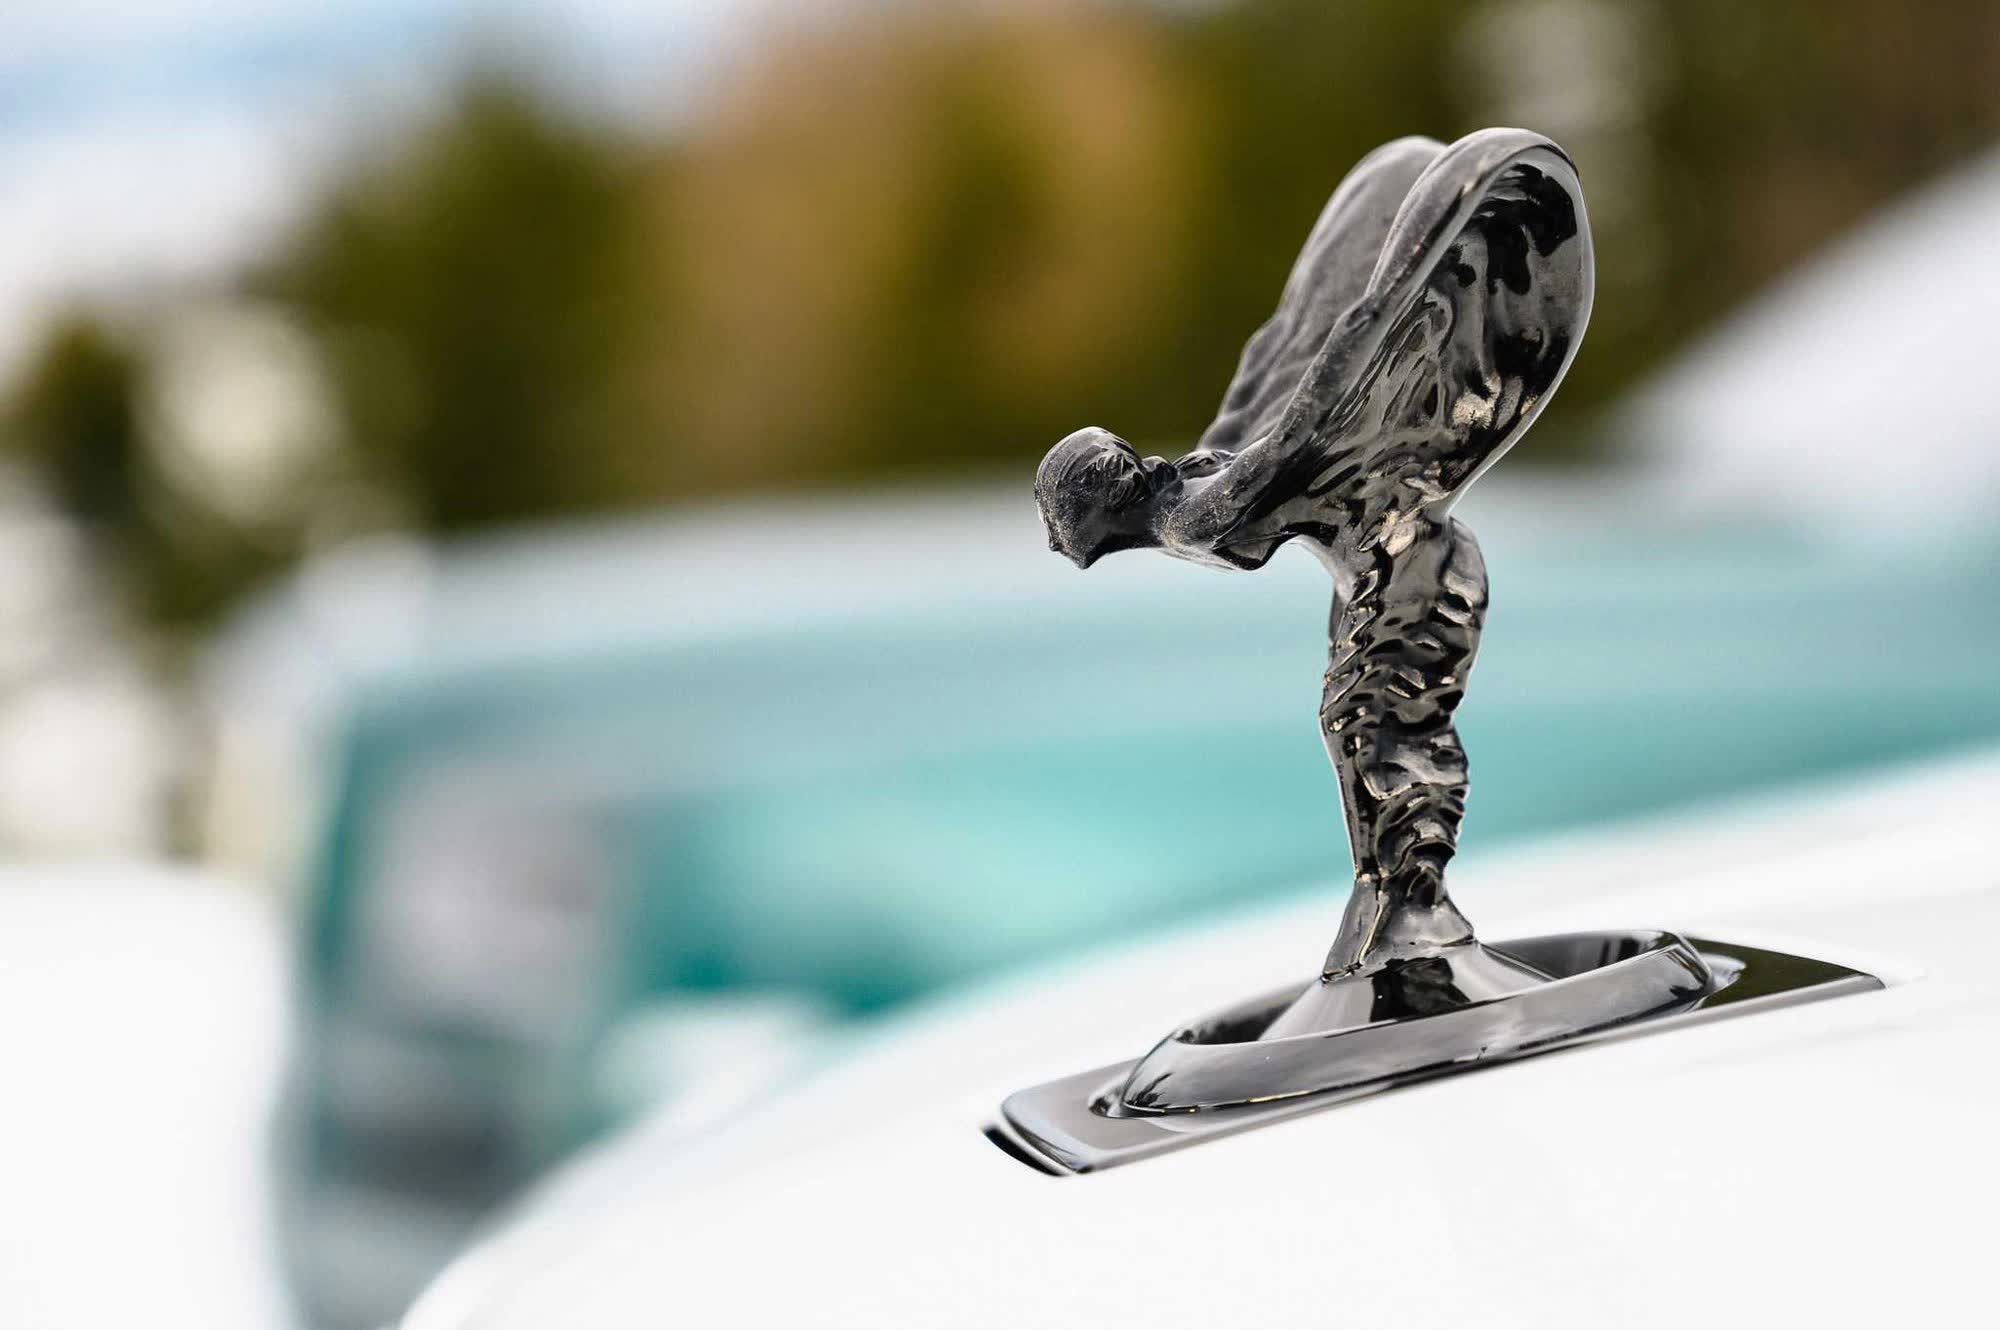 Chuyện 'thâm cung bí sử' về biểu tượng 'thiếu phụ bay' của Rolls-Royce: Vợ của quý tộc, suýt lấy cảm hứng từ Nike - Ảnh 3.